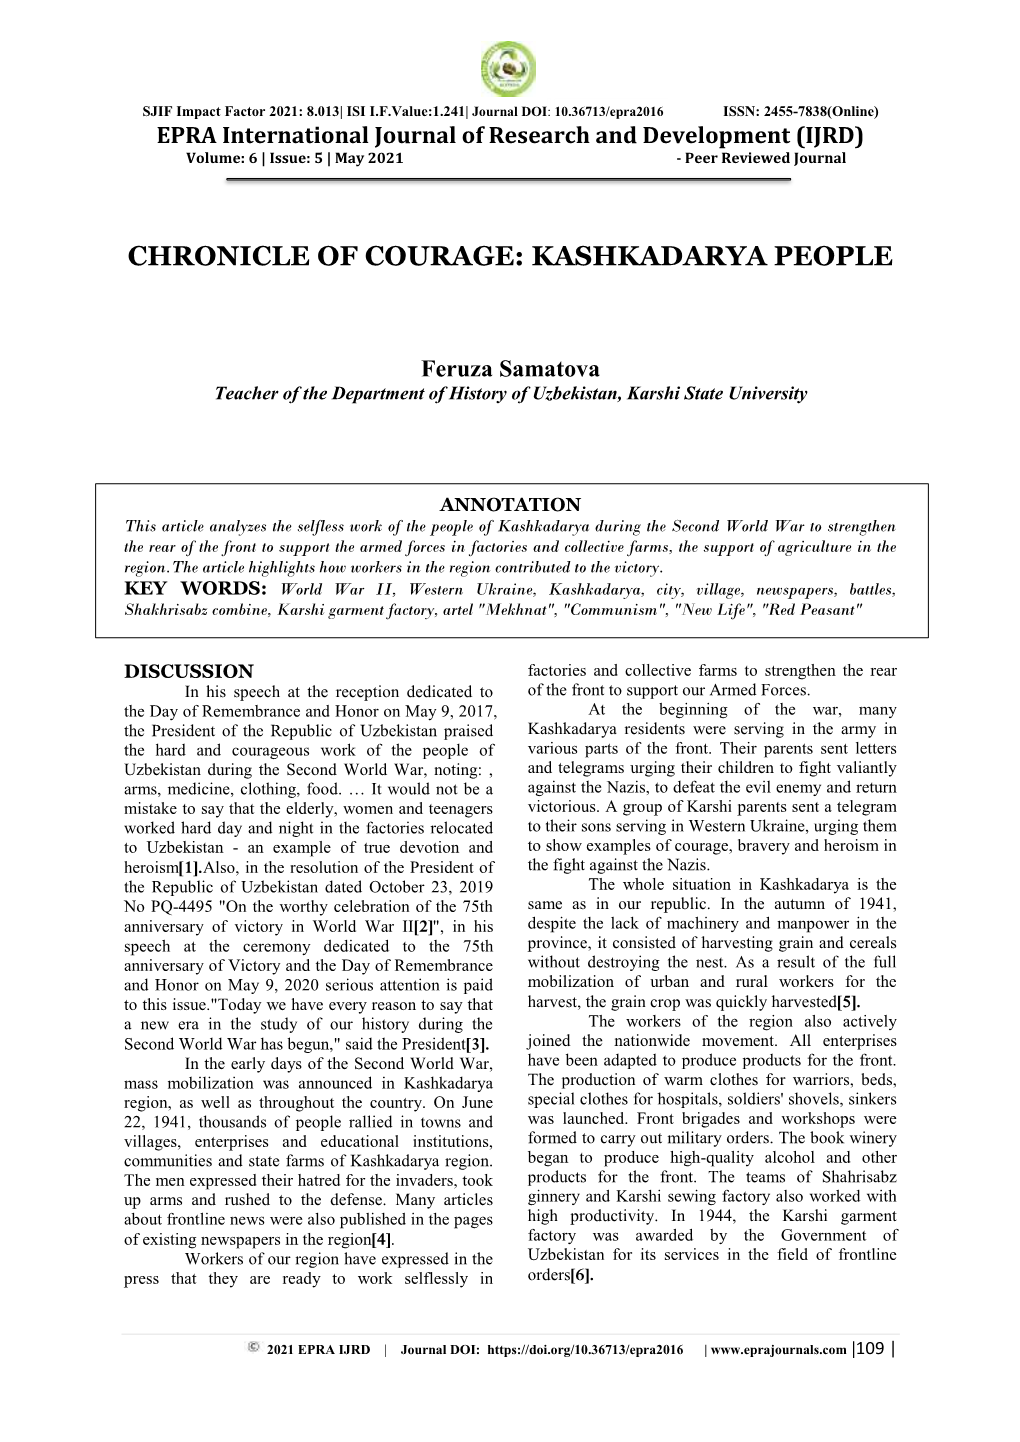 Chronicle of Courage: Kashkadarya People